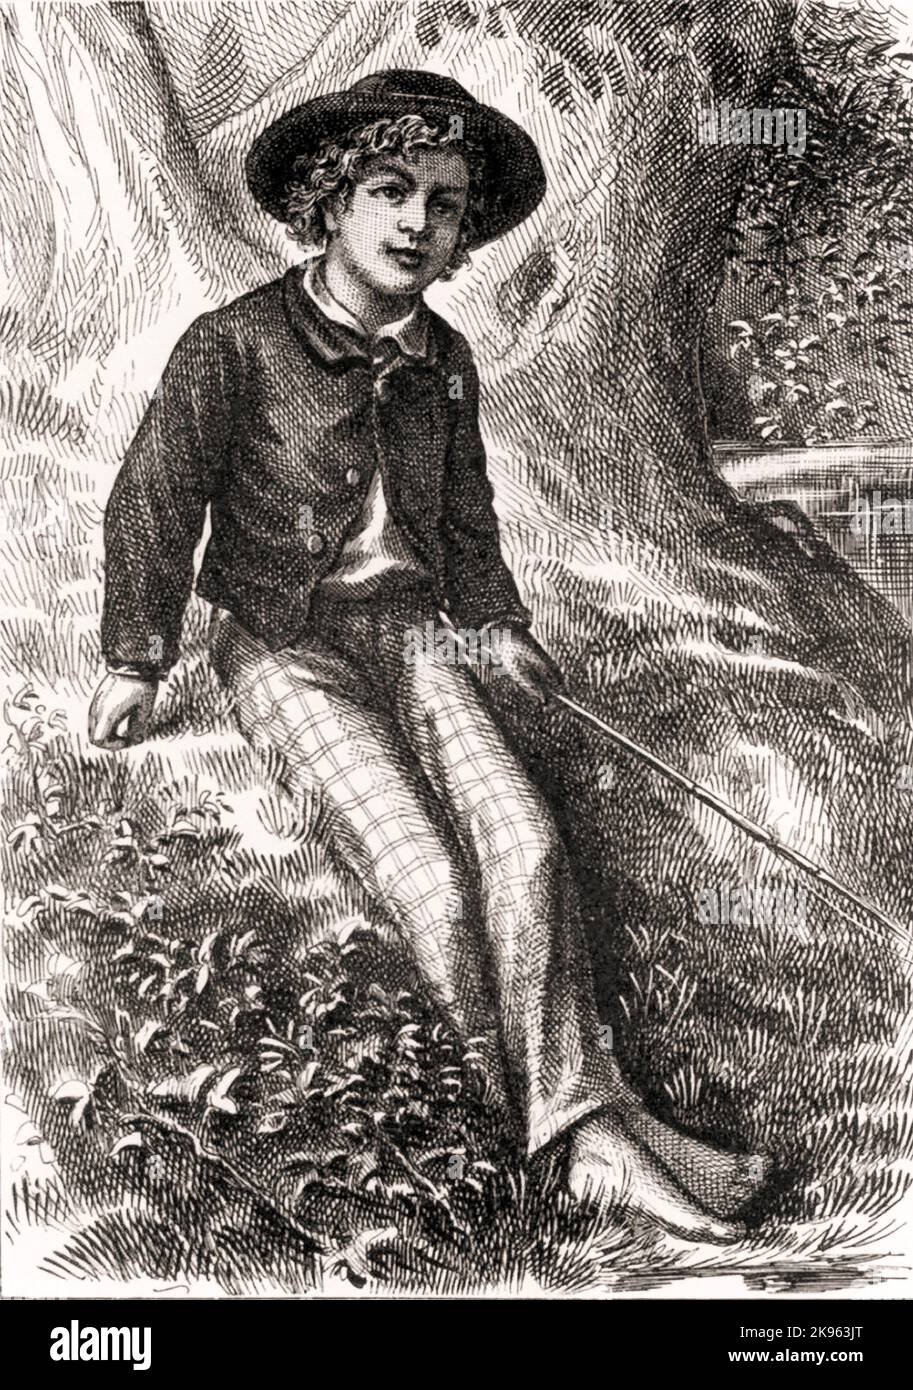 Buch Adventures of Tom Sawyer von Mark Twain 1876 Frontispiz Stockfoto